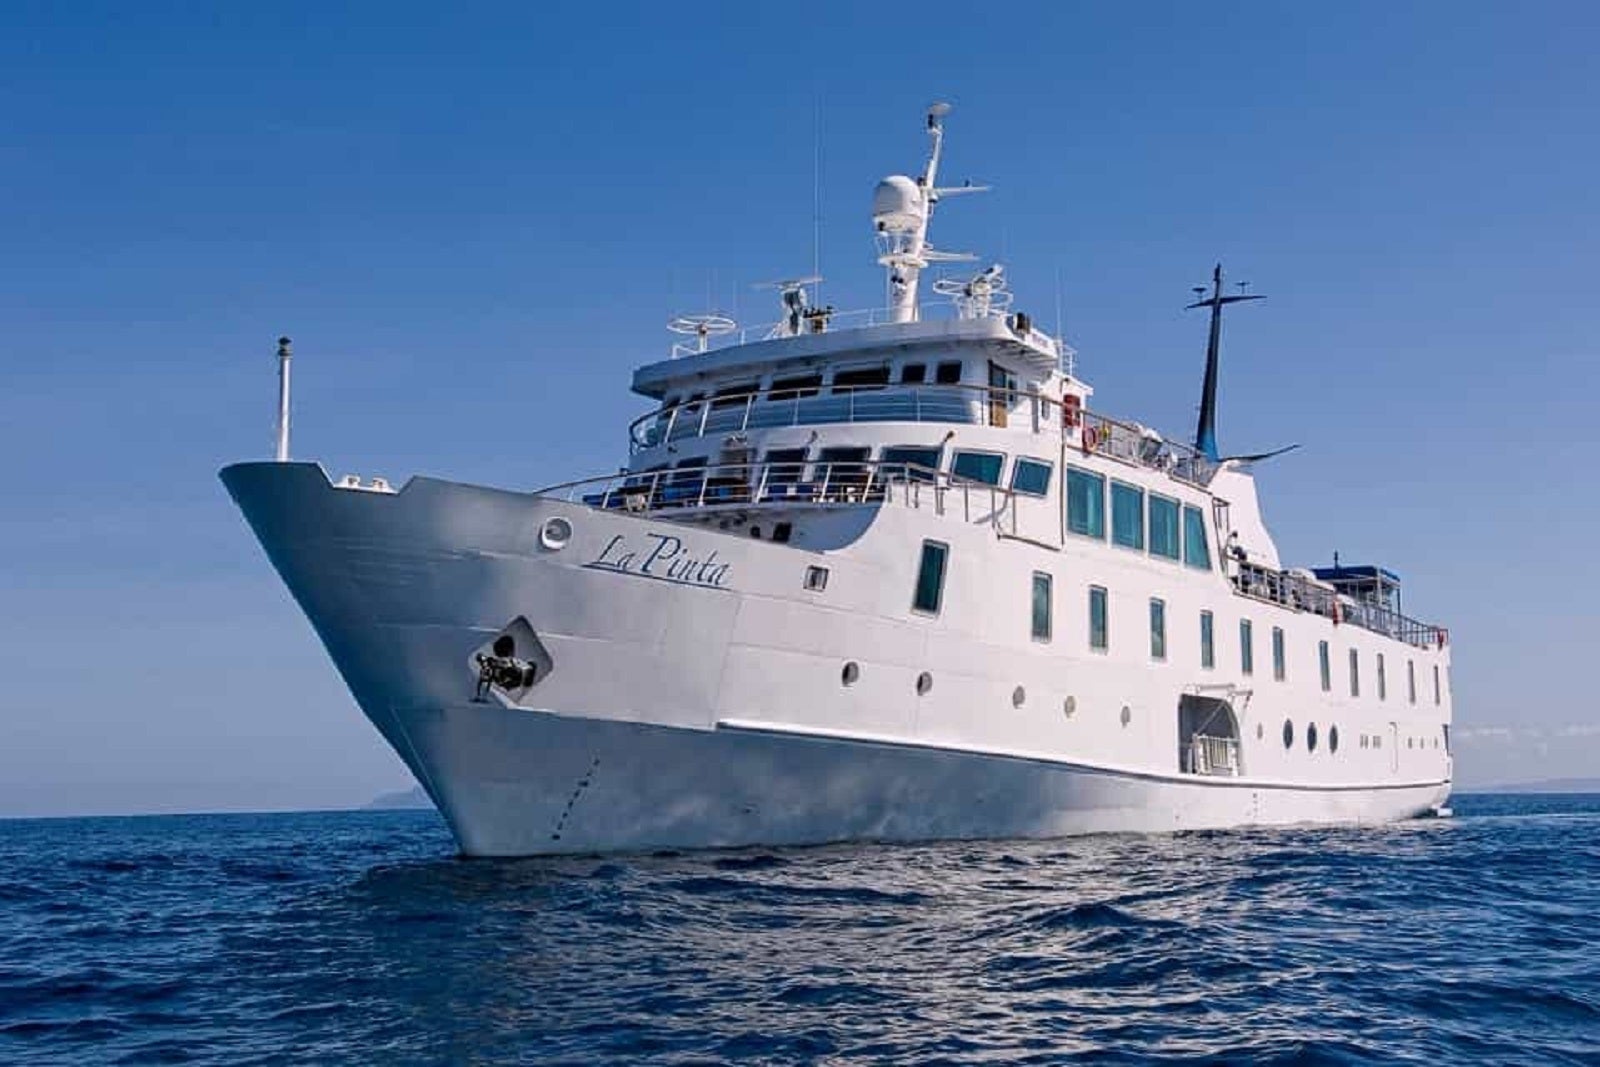 galapagos cruise boats